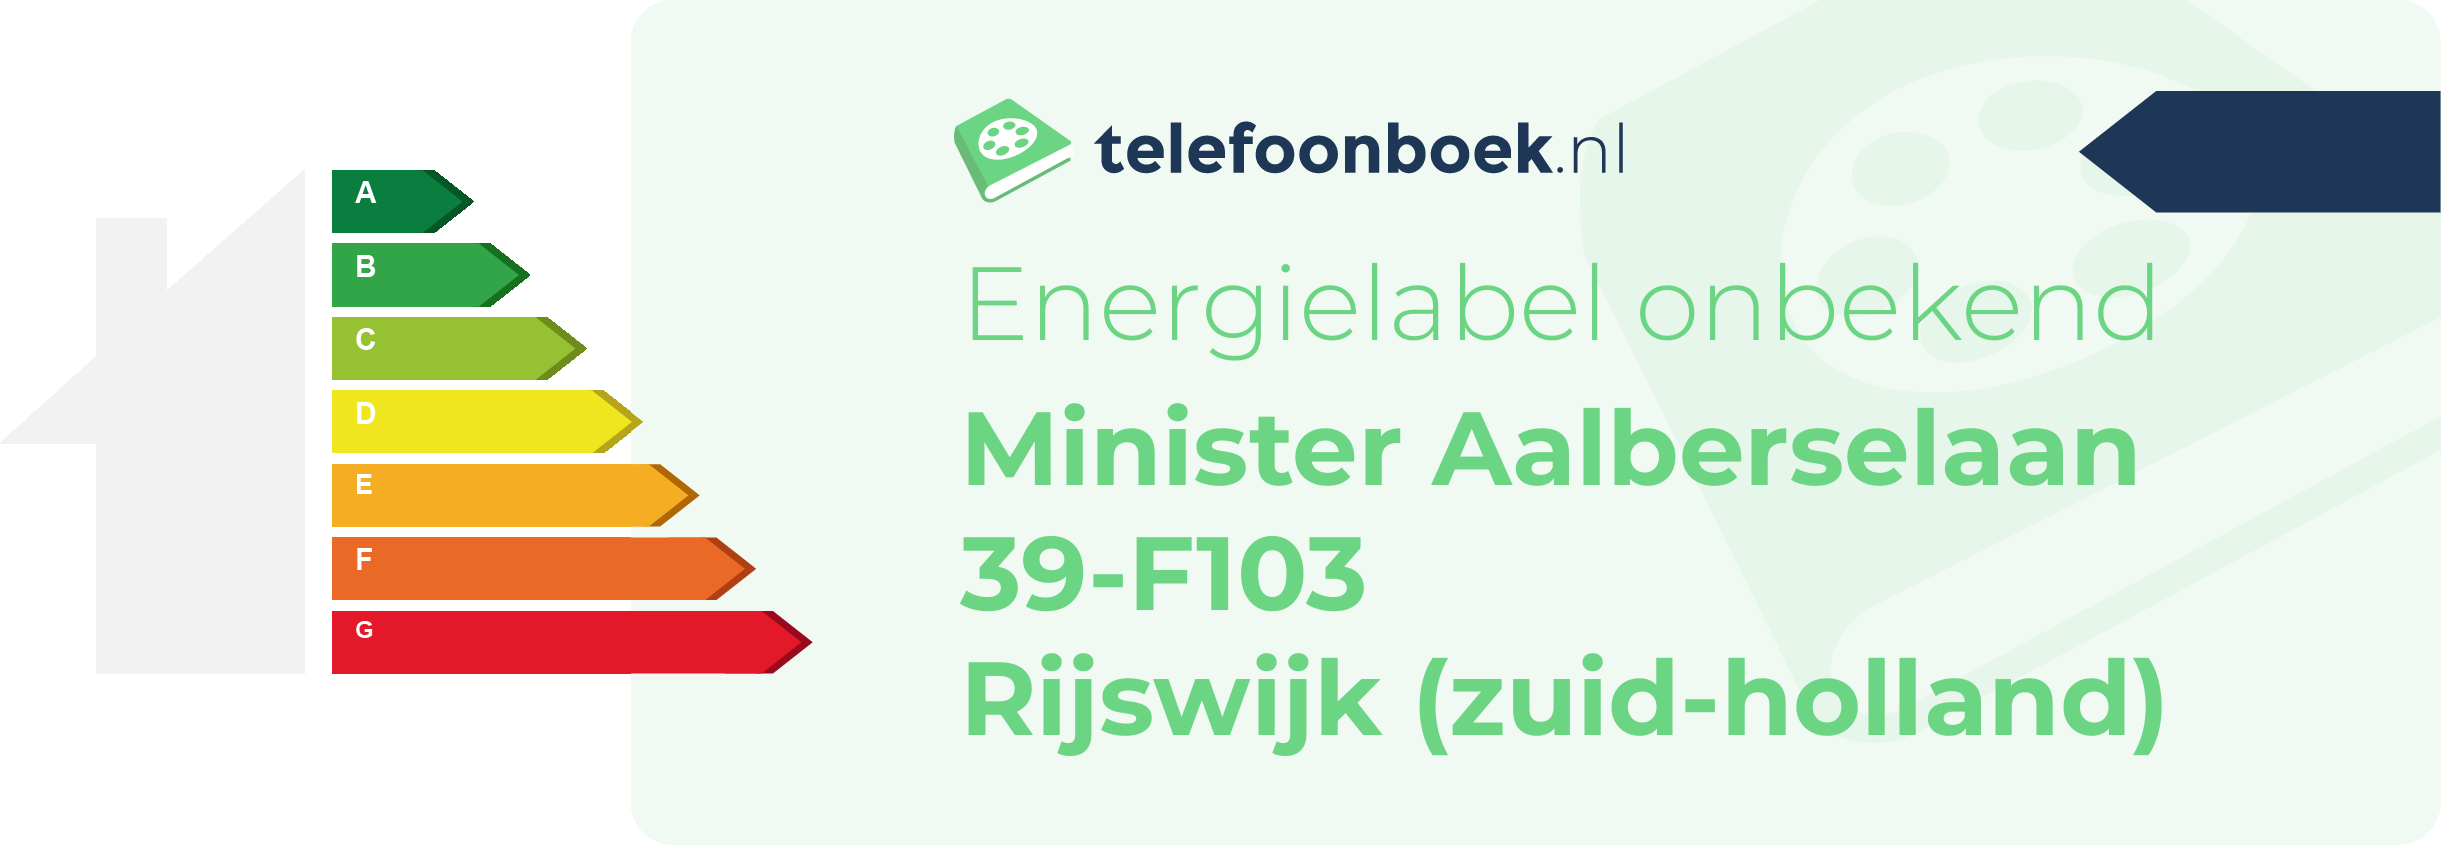 Energielabel Minister Aalberselaan 39-F103 Rijswijk (Zuid-Holland)